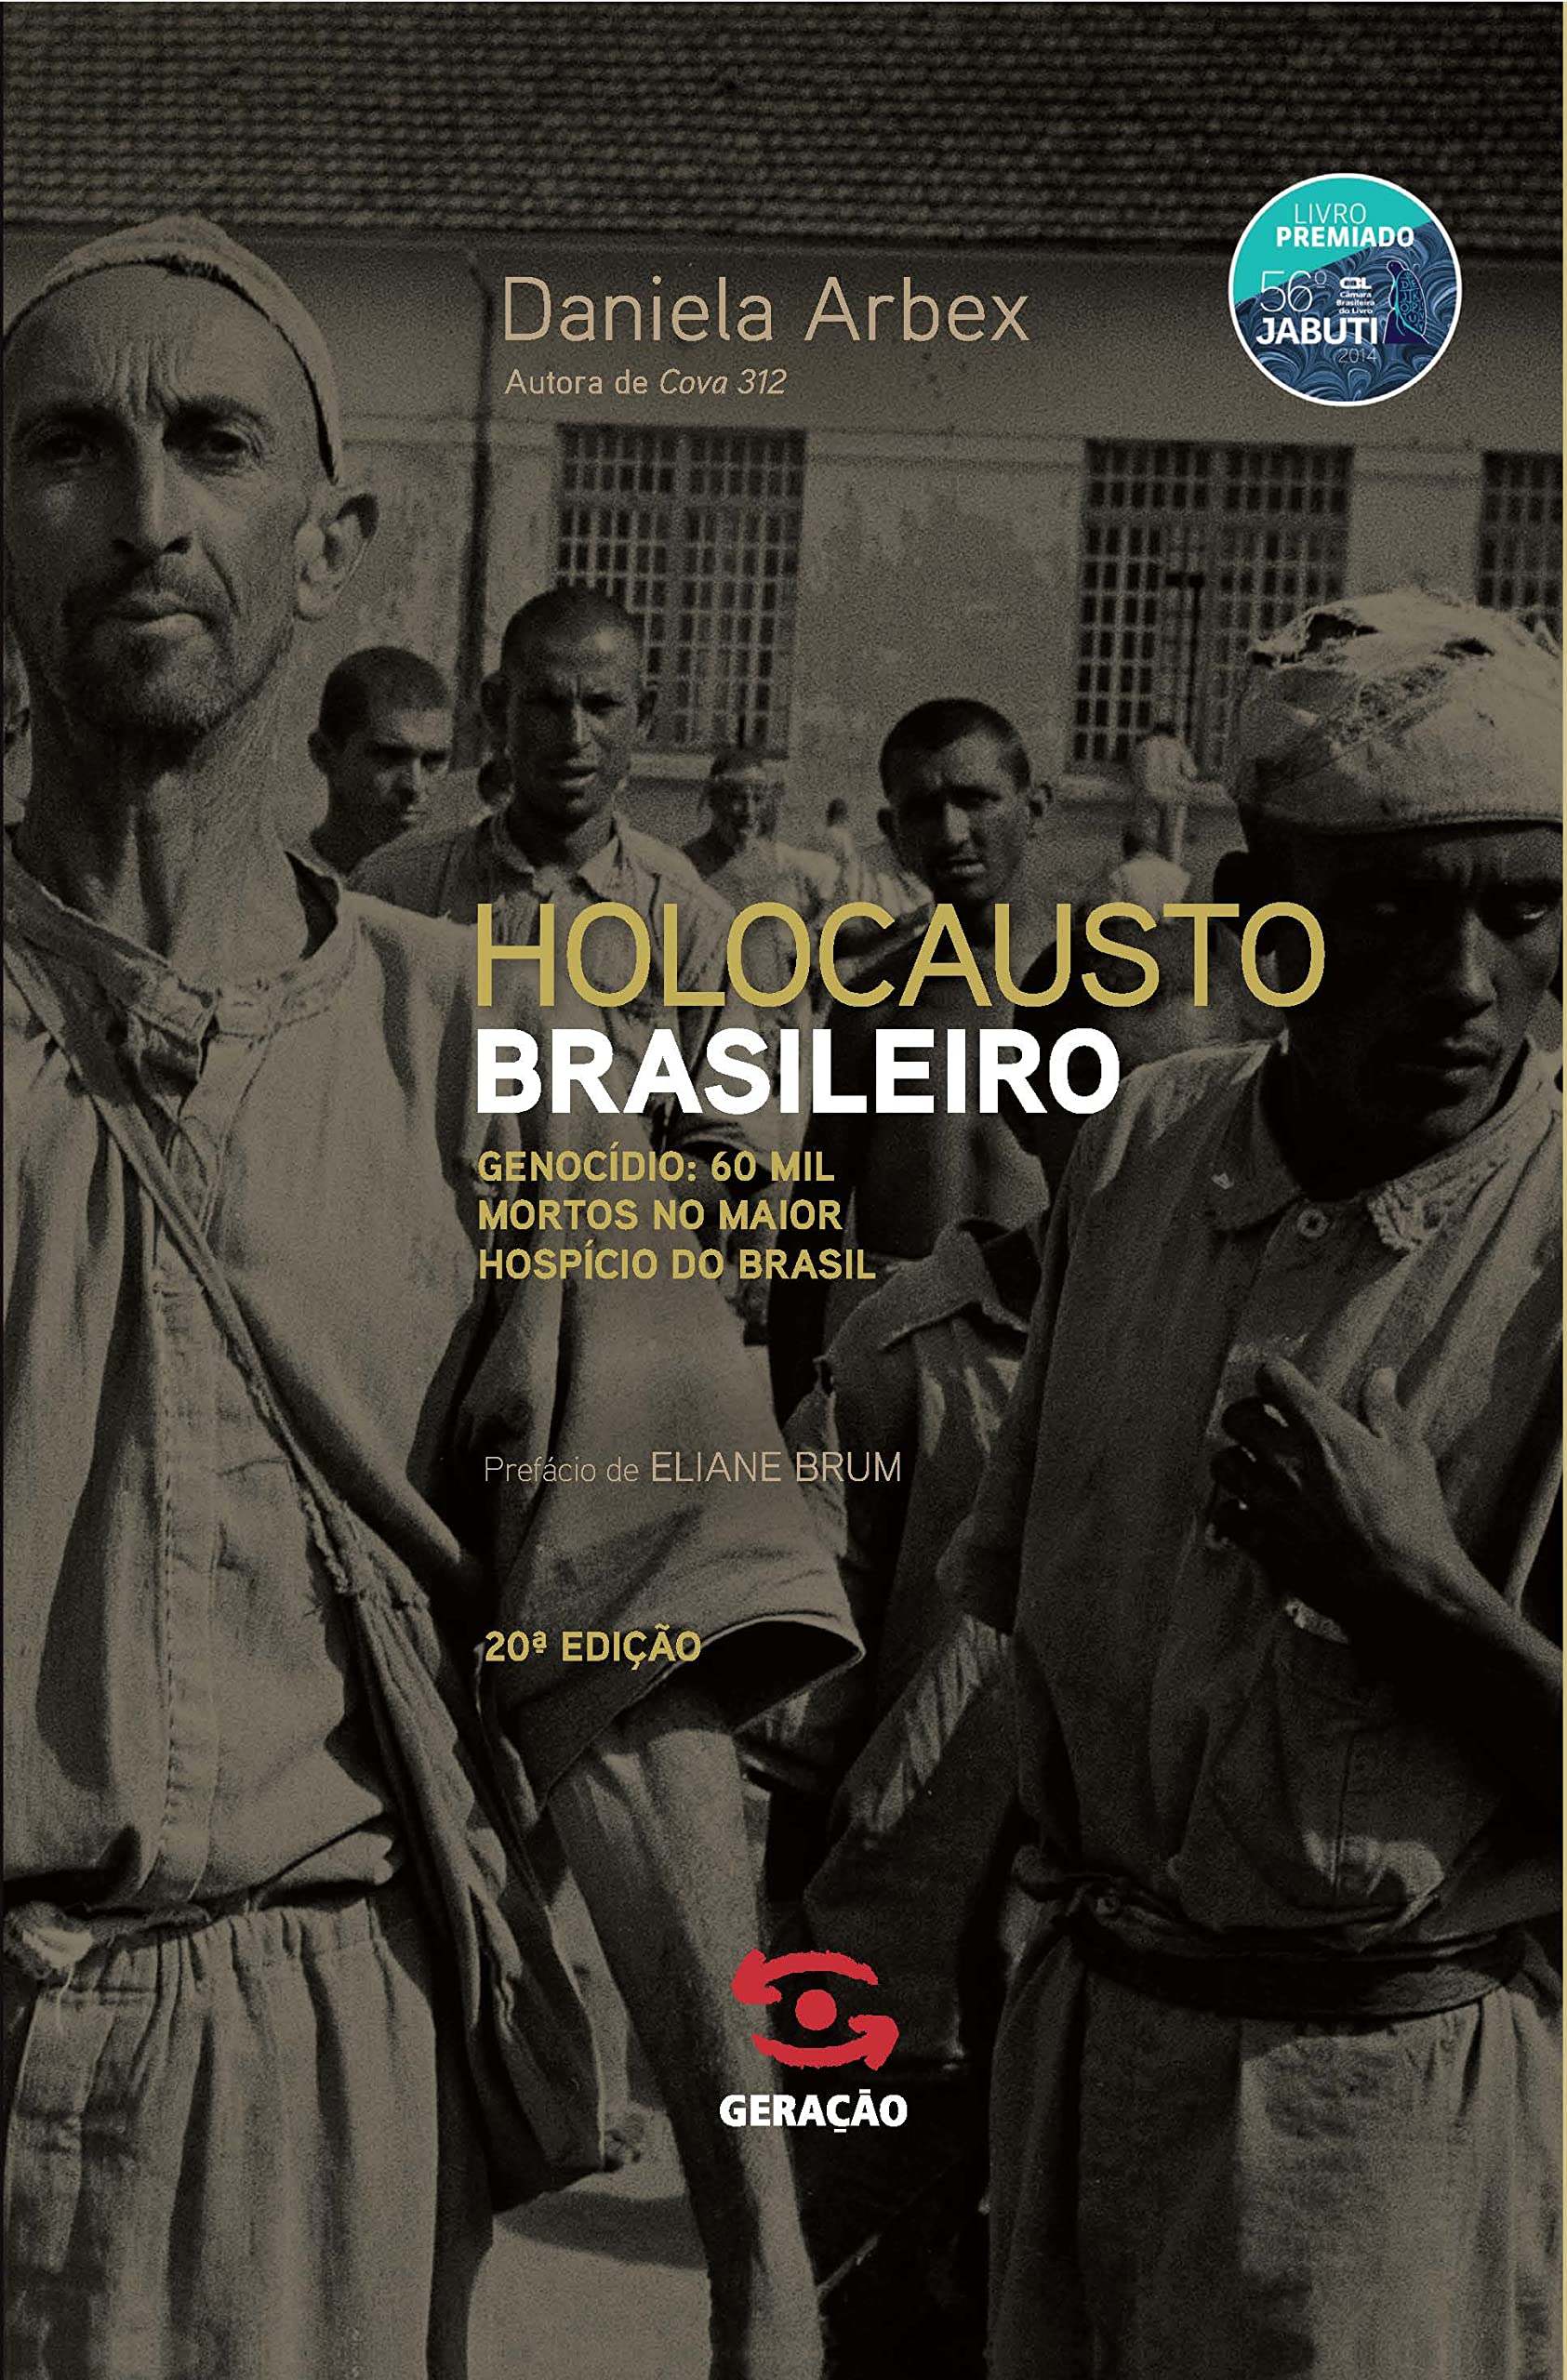 Livre Holocausto Brasileiro : Genocidio - Daniela Arbex